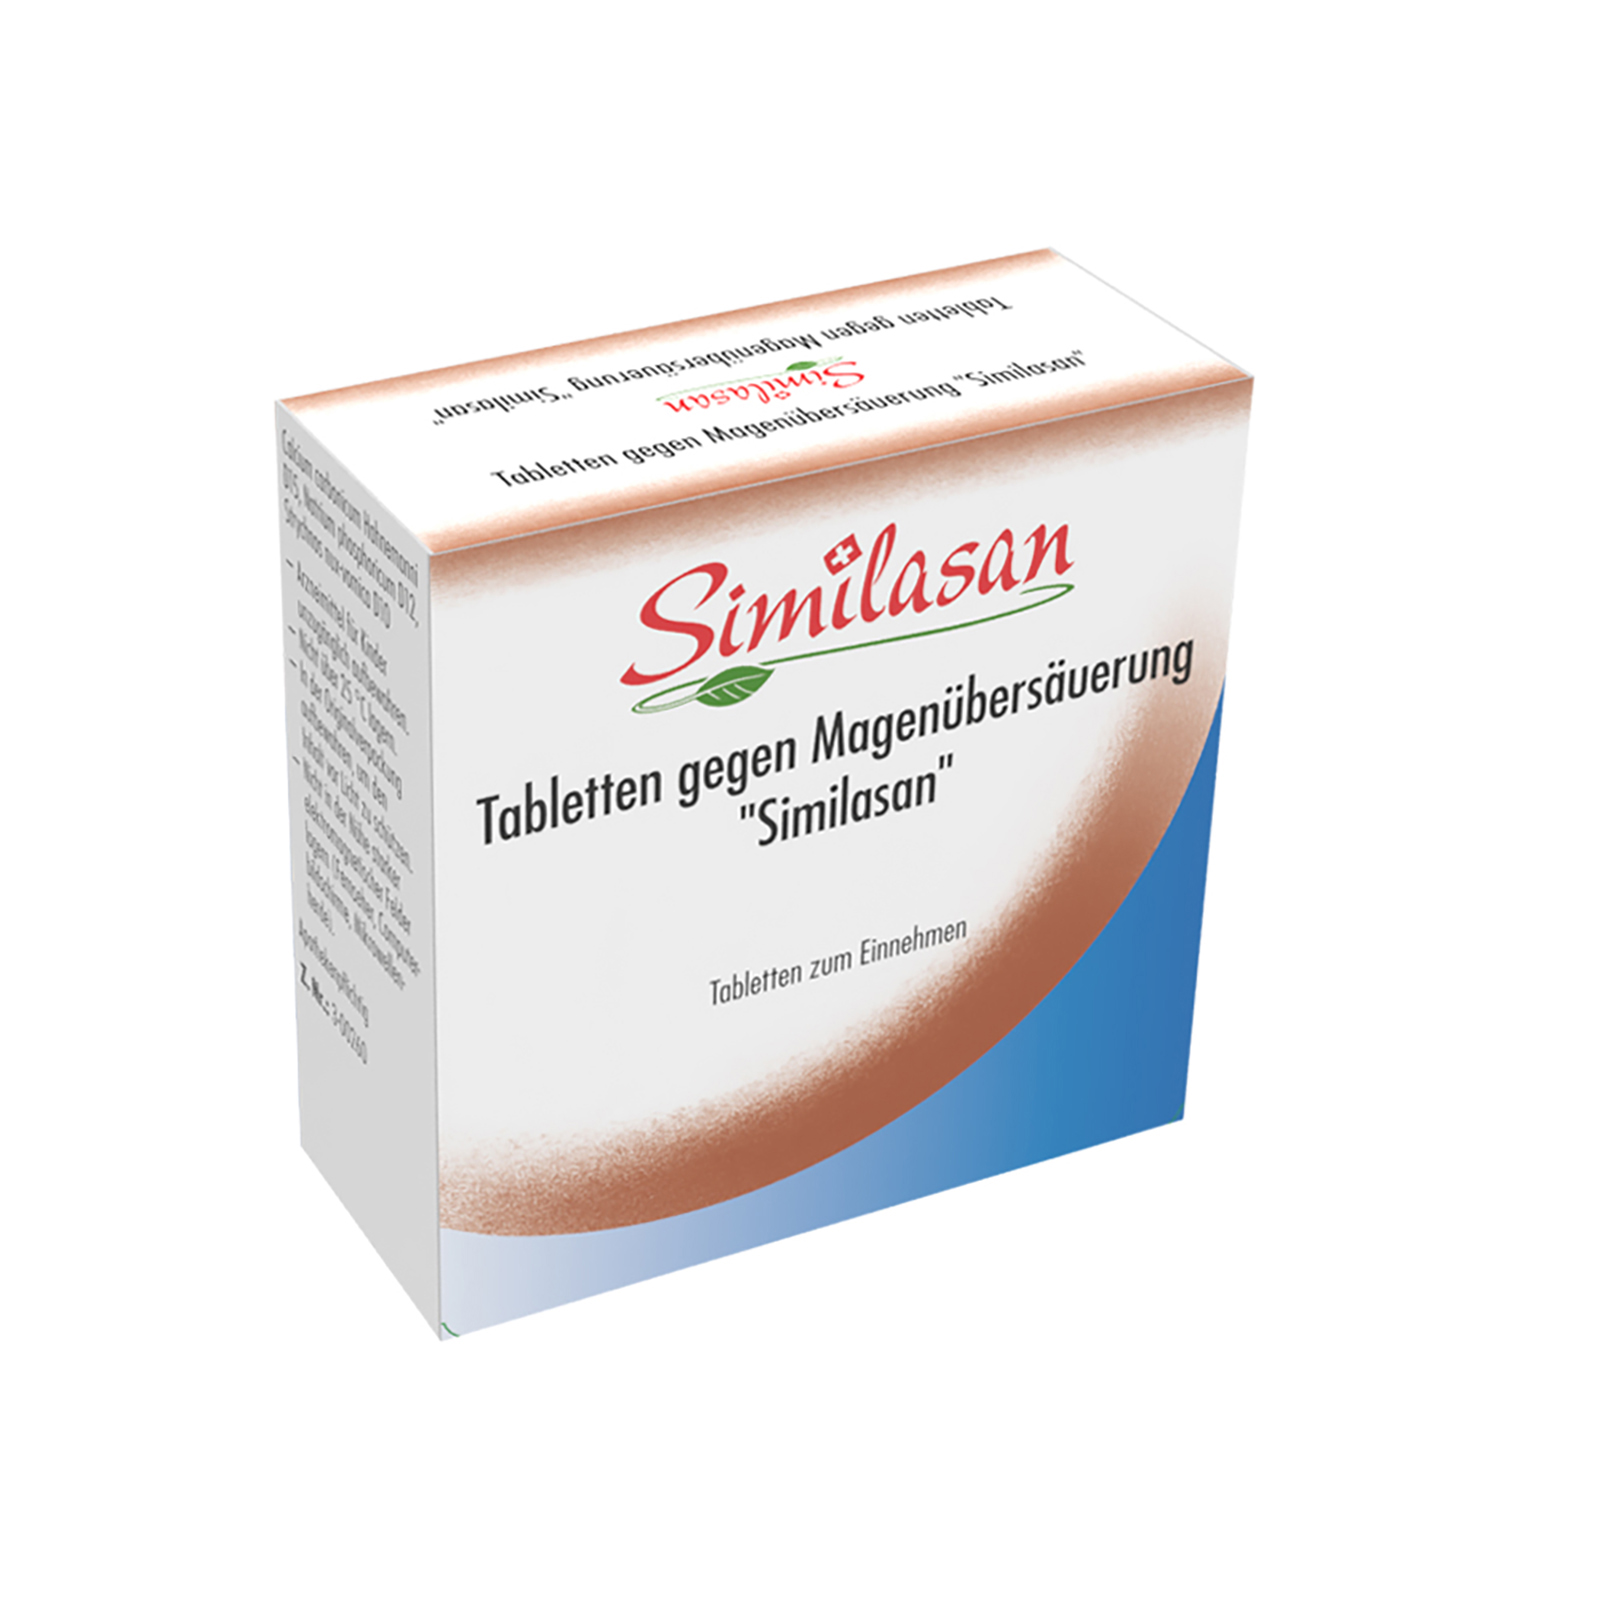 Tabletten gegen Magenübersäuerung "Similasan"